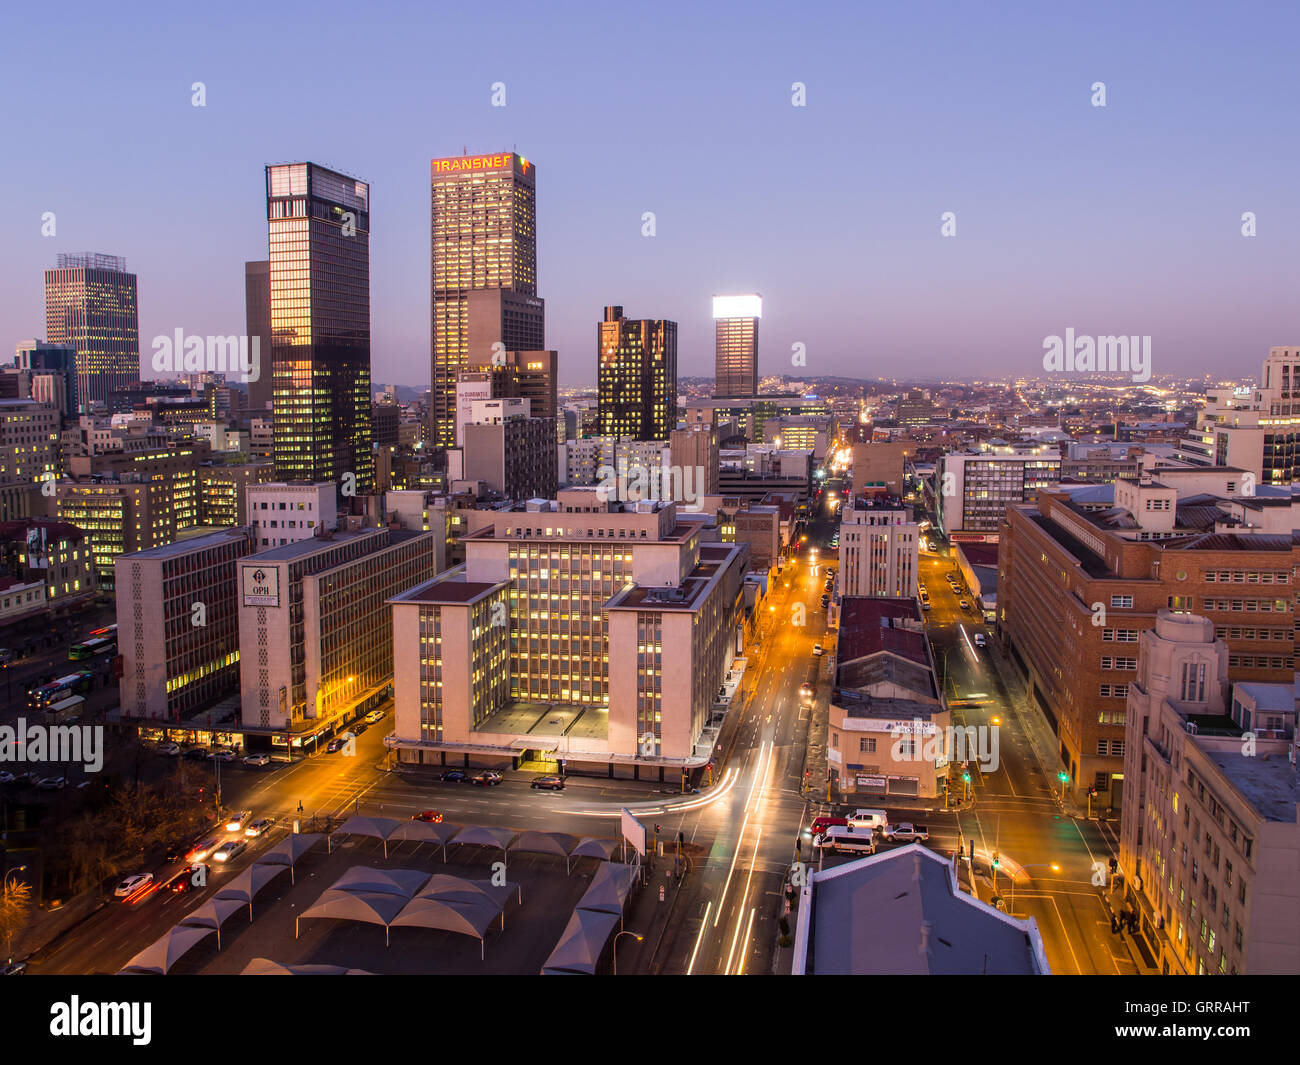 La ville de Johannesburg par nuit vu depuis le toit de l'un des immeubles dans le quartier des affaires. Banque D'Images